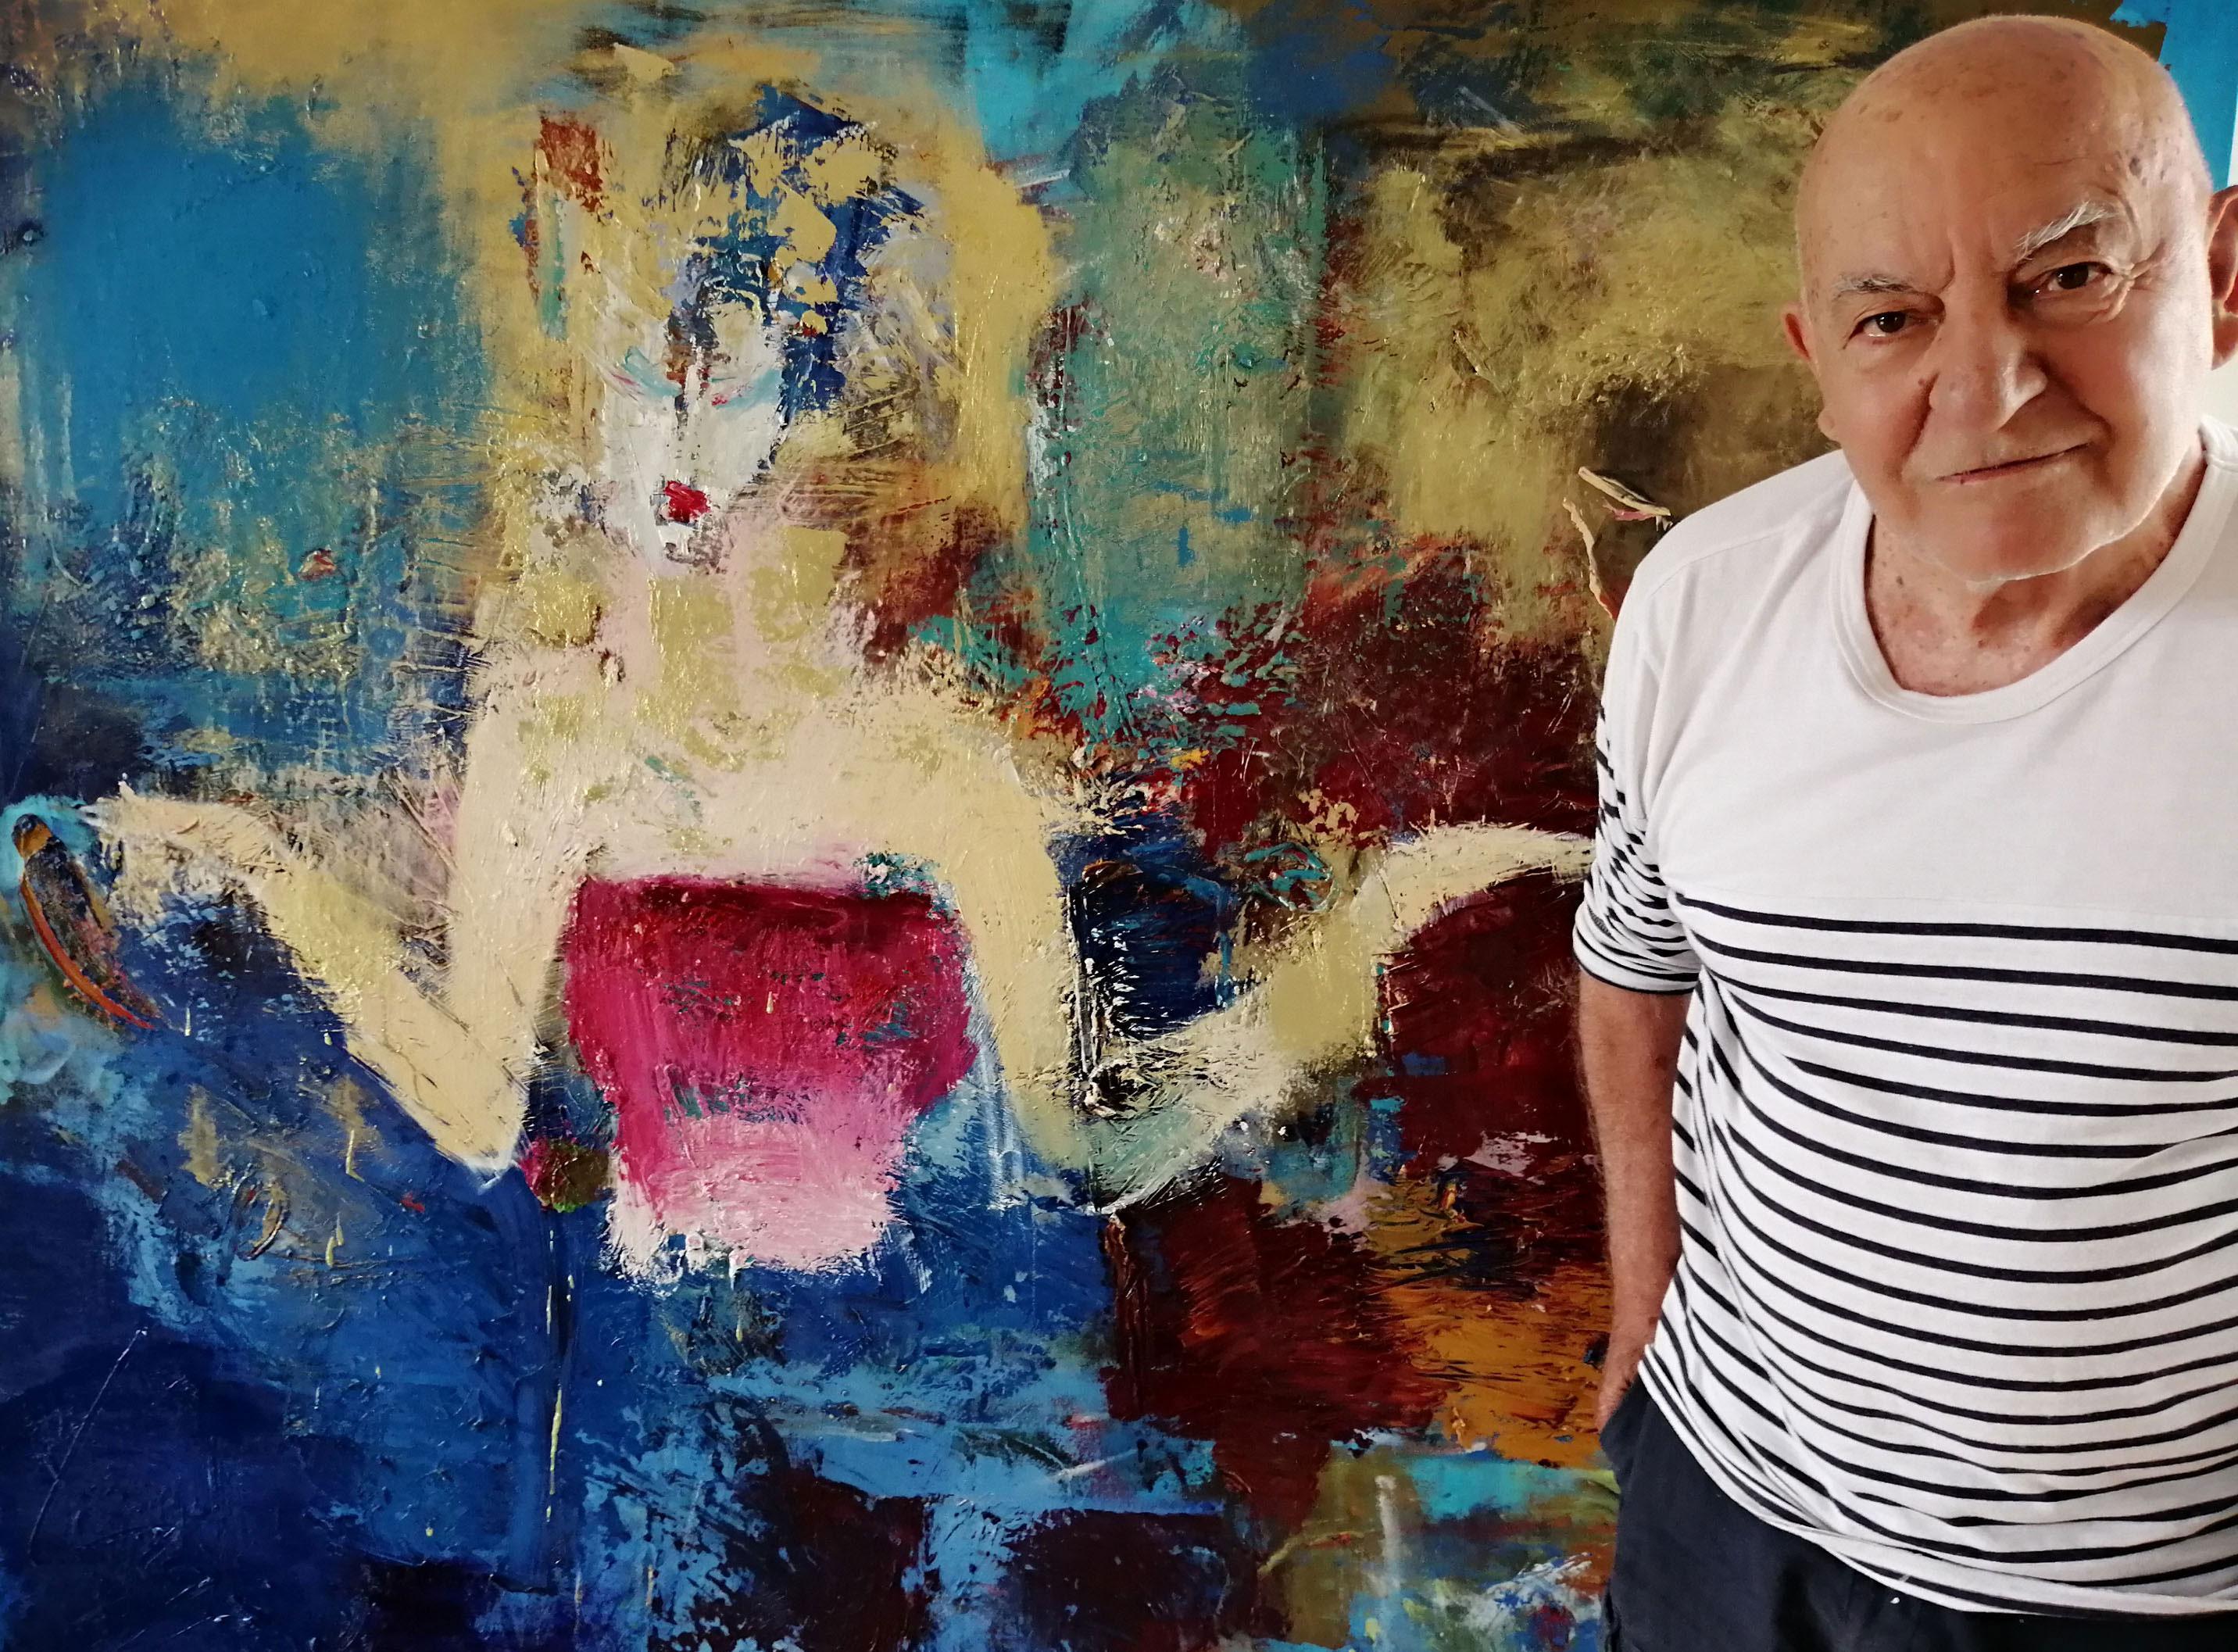 Kendisine Türkiyenin Picassosuyum diyen ressama babalık davası